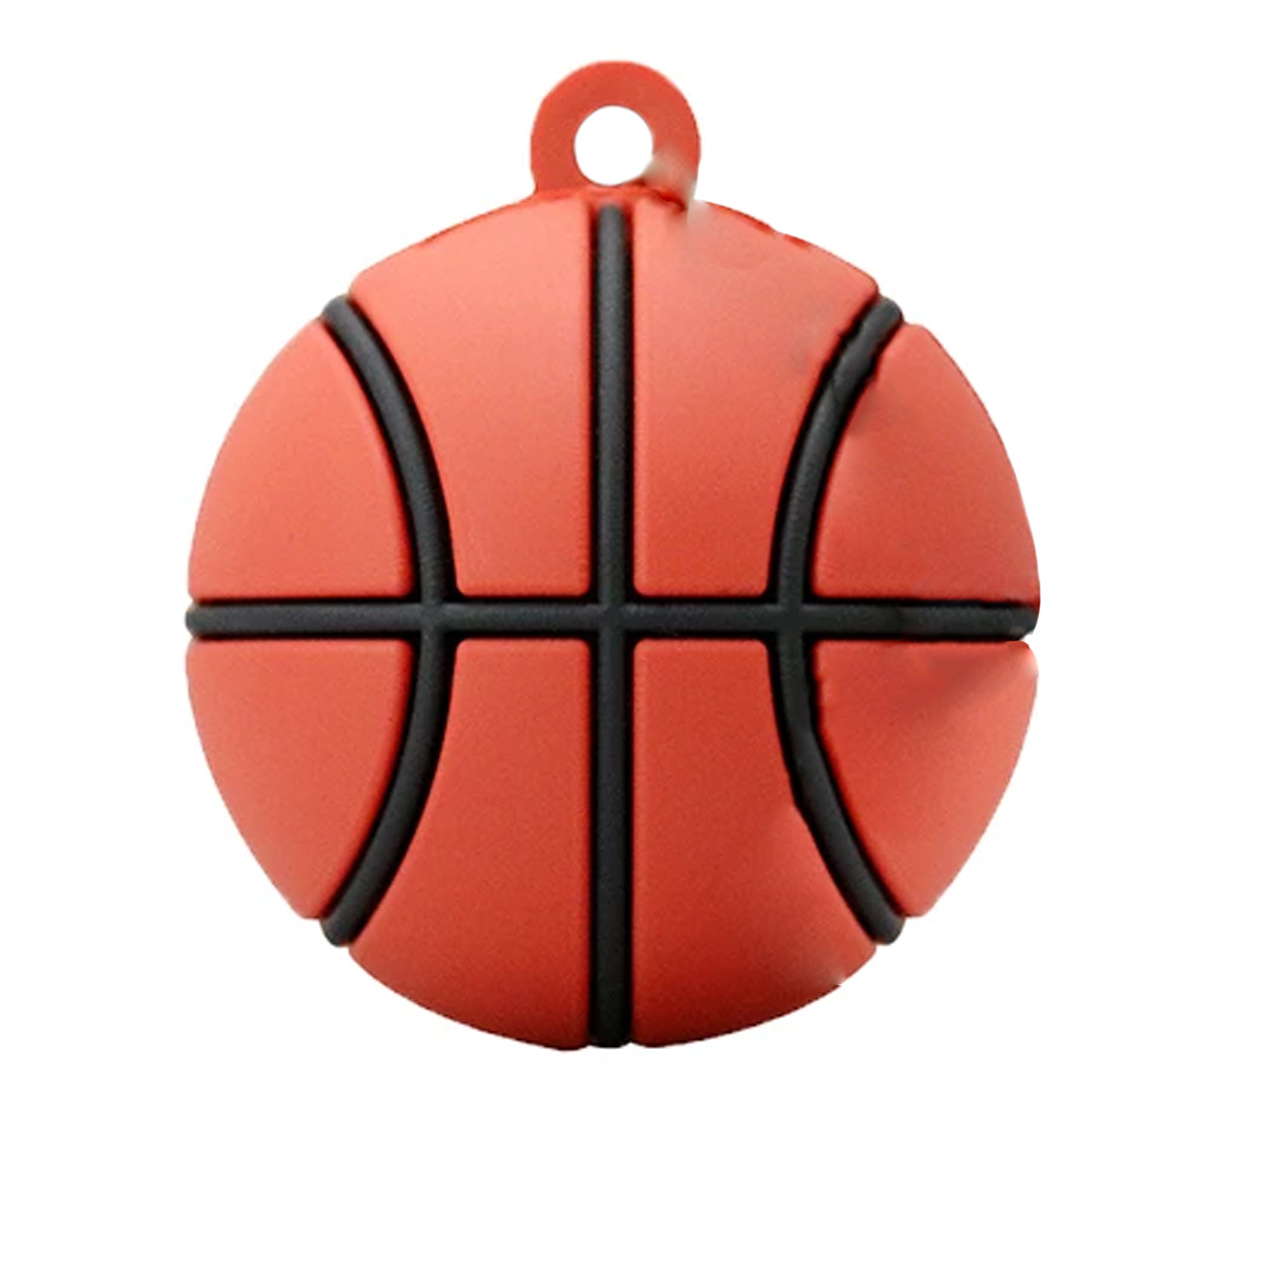 فلش مموری طرح توپ basketball مدل DPL1115 ظرفیت 64 گیگابایت